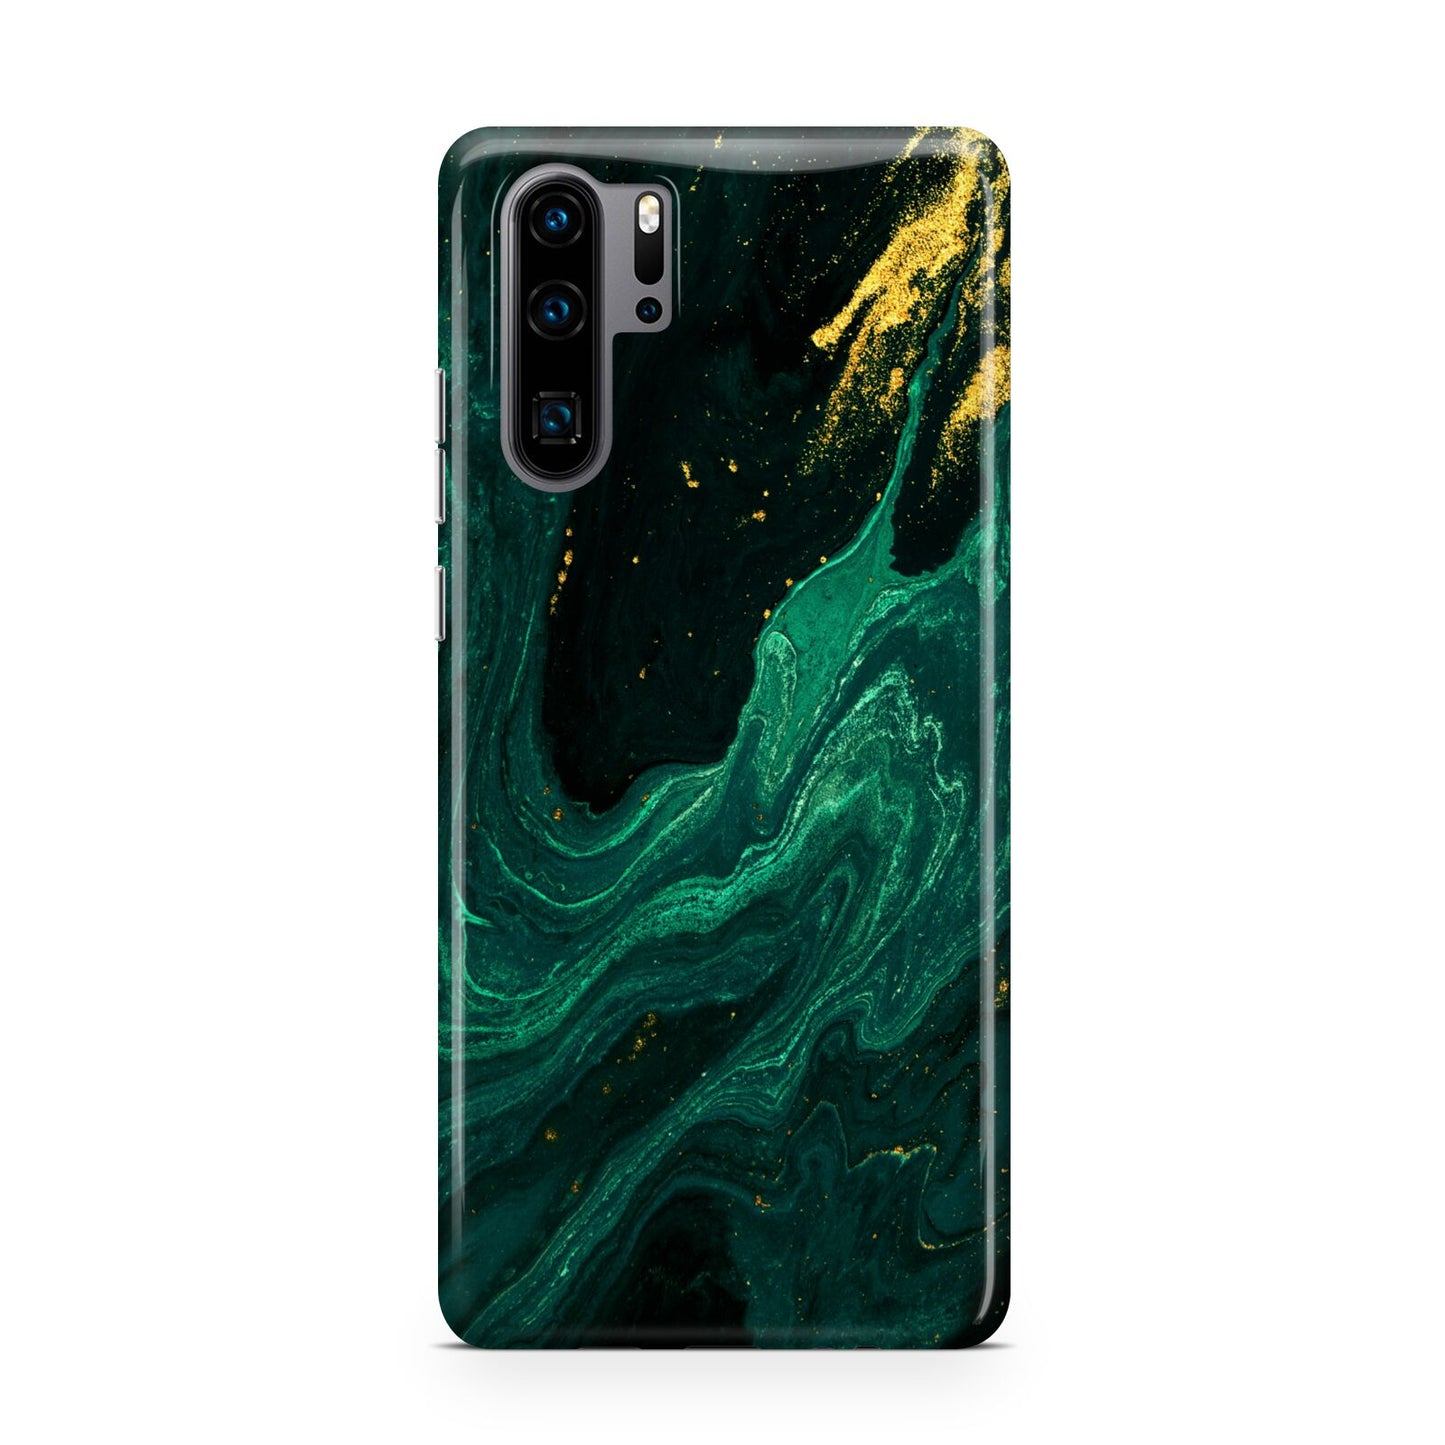 Emerald Green Huawei P30 Pro Phone Case